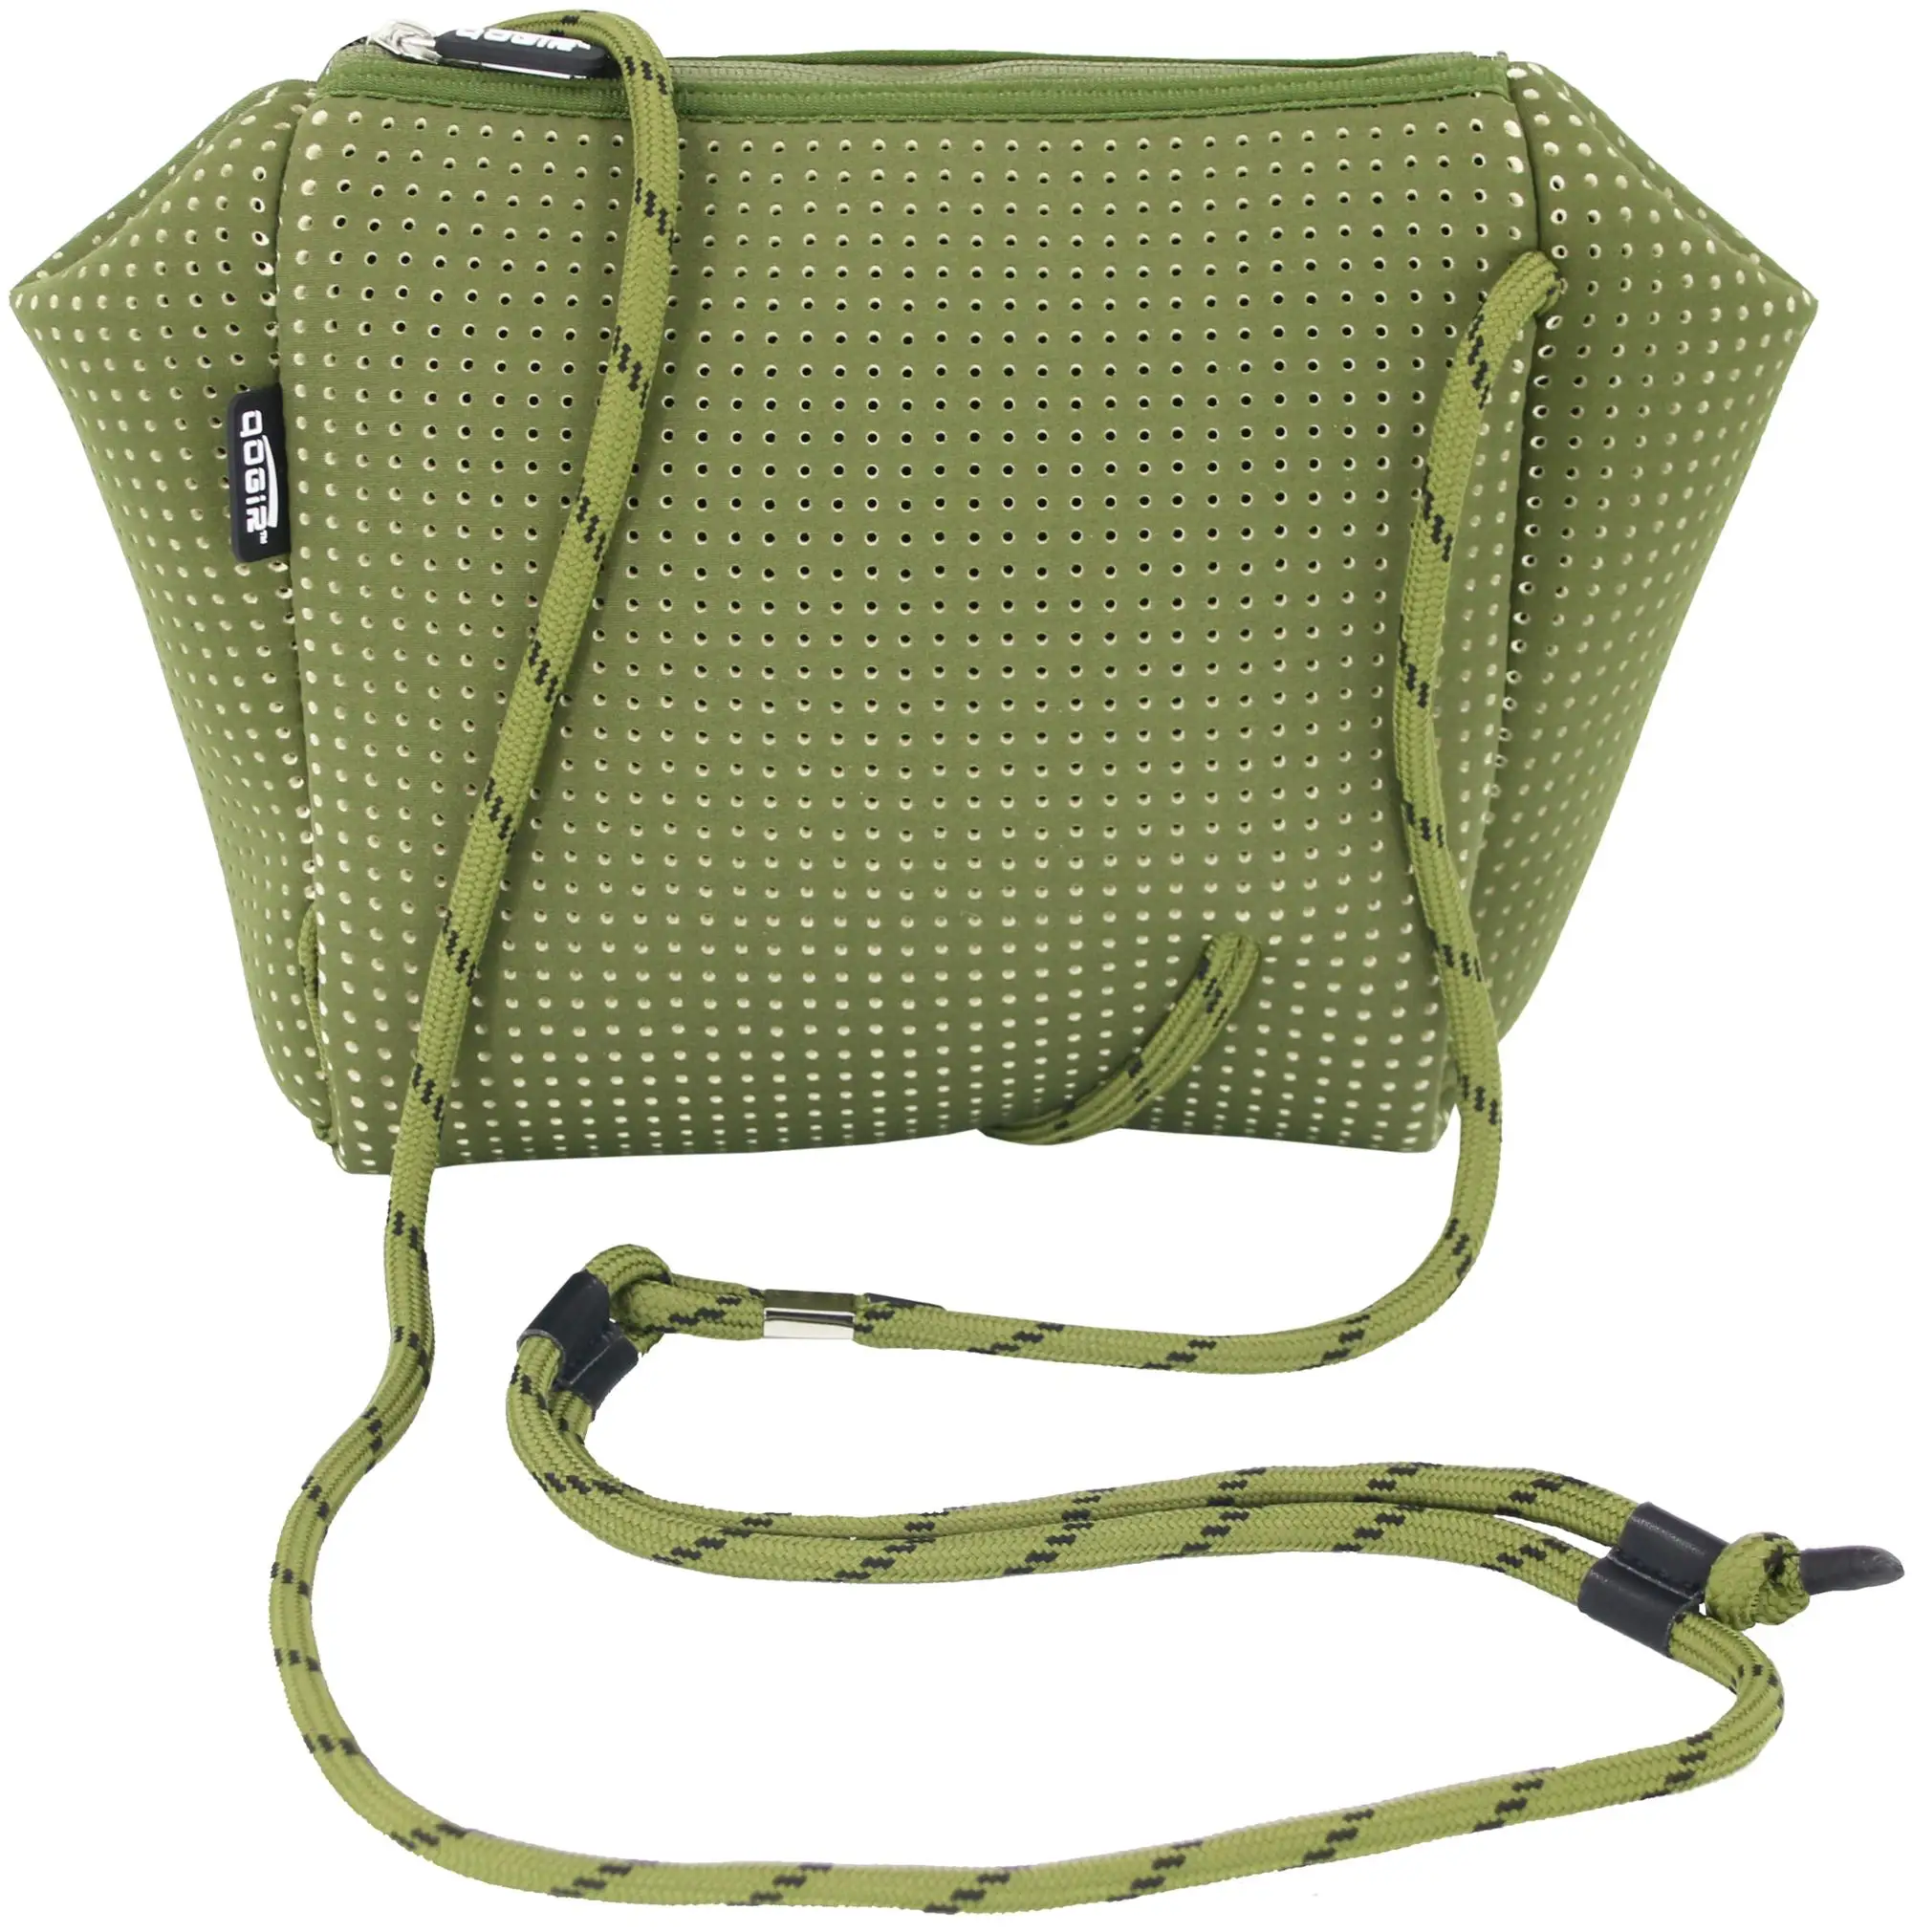 Neoprene Perforated Shoulder Bag With Inside Pocket And Adjustable ...